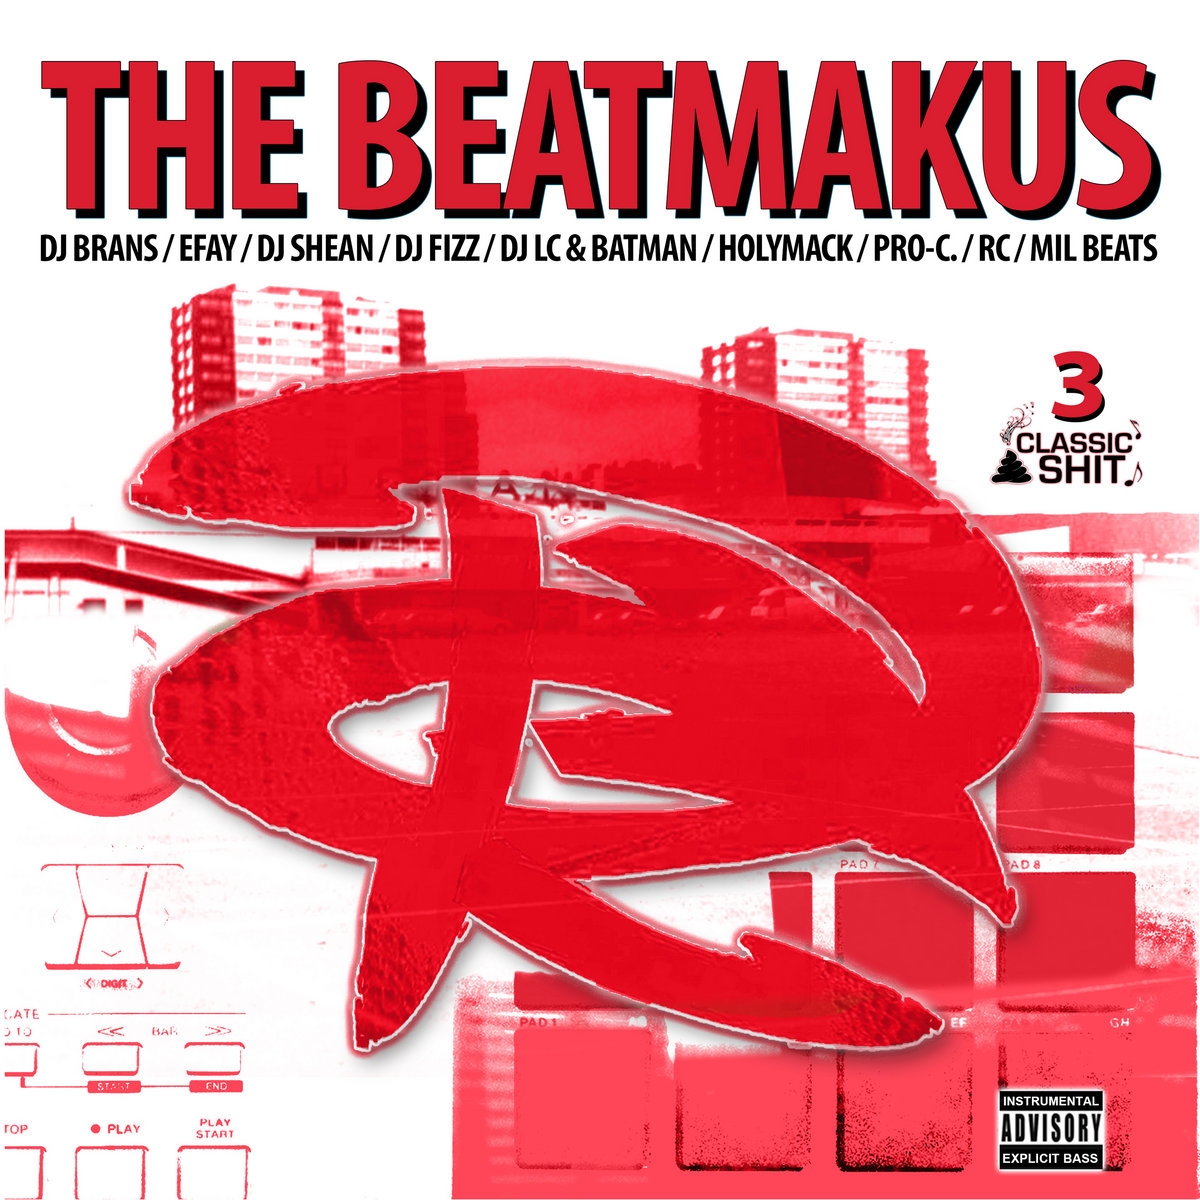 Album vinyle "The RC Beatmakus volumes 3" de the rc beatmakus sur Scredboutique.com